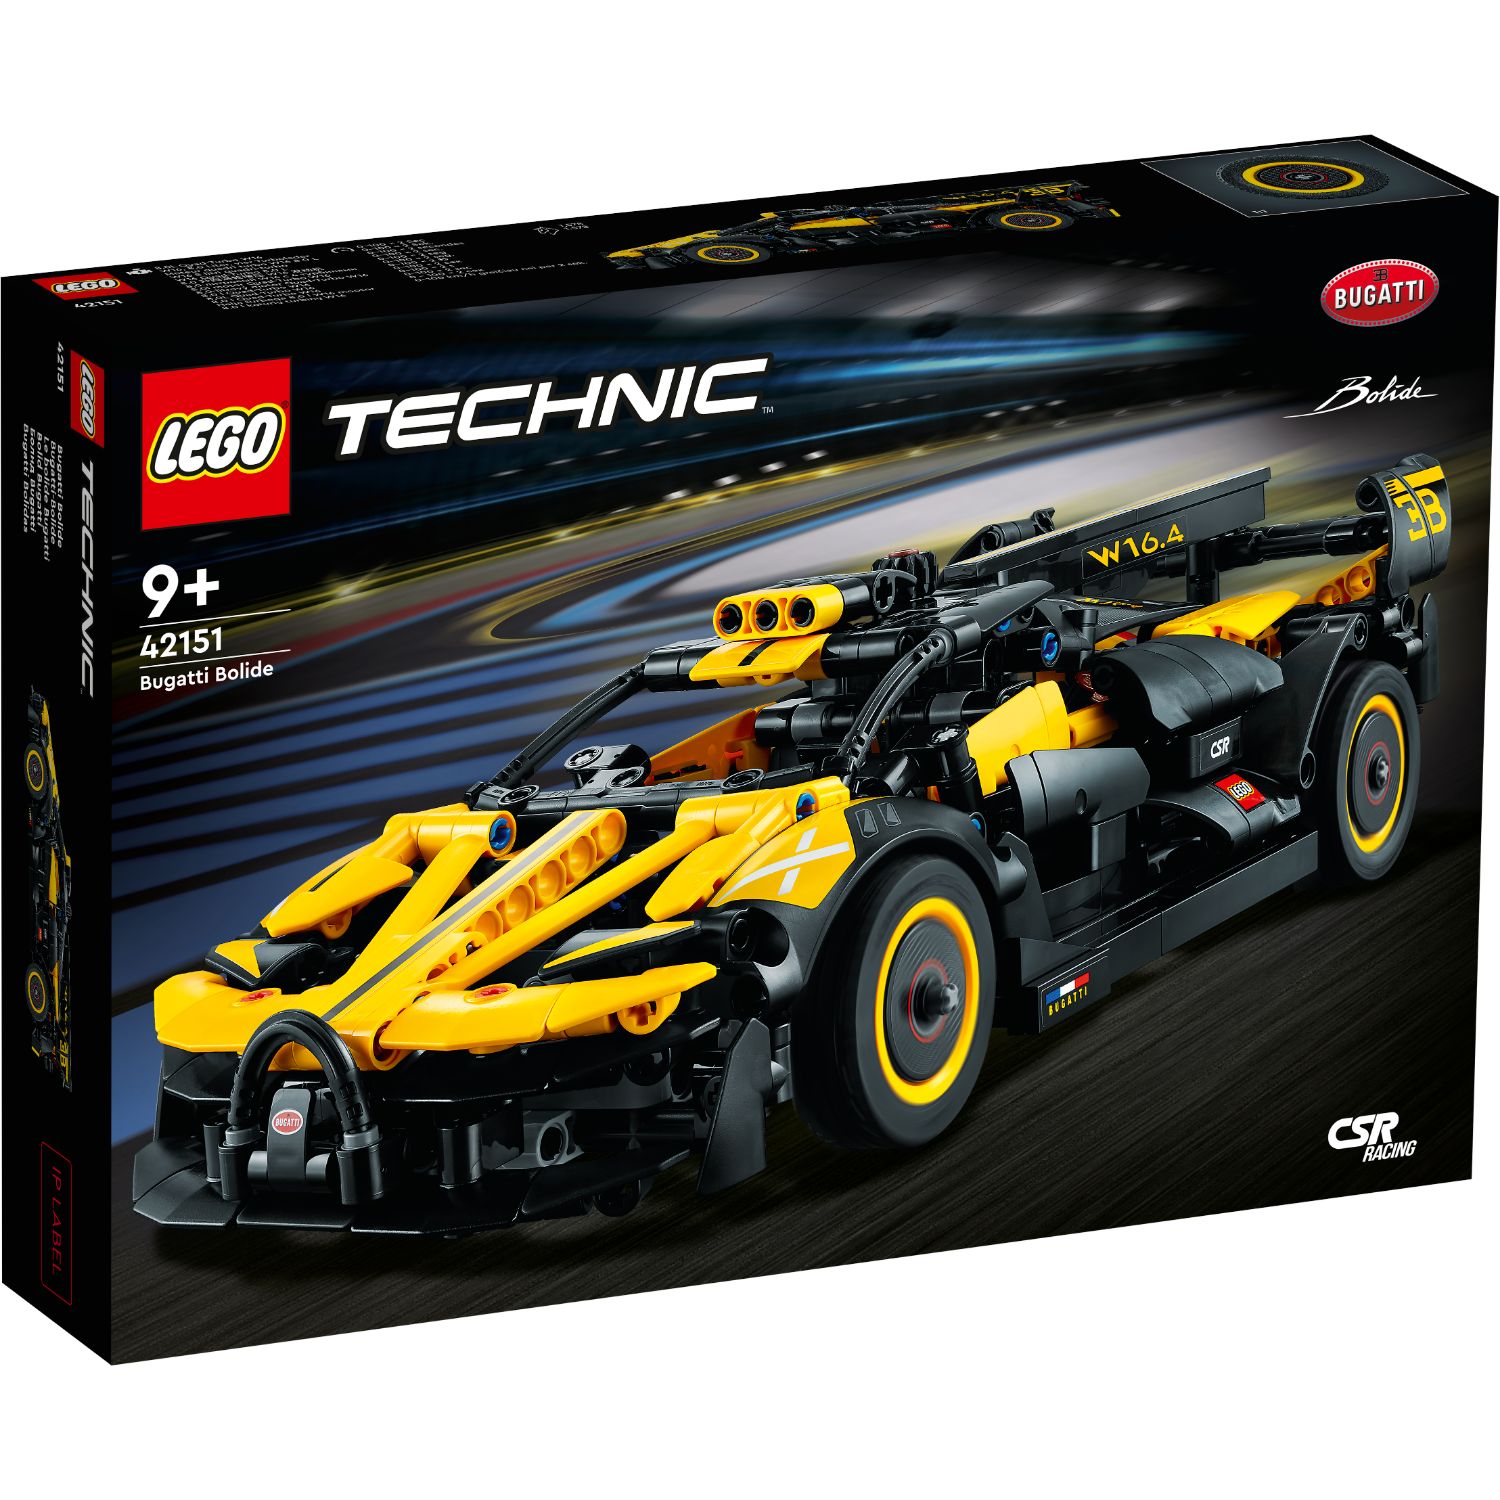 LEGO TECHNIC 42151 BUGATTI BOLIDE - 411 7360 - 530442